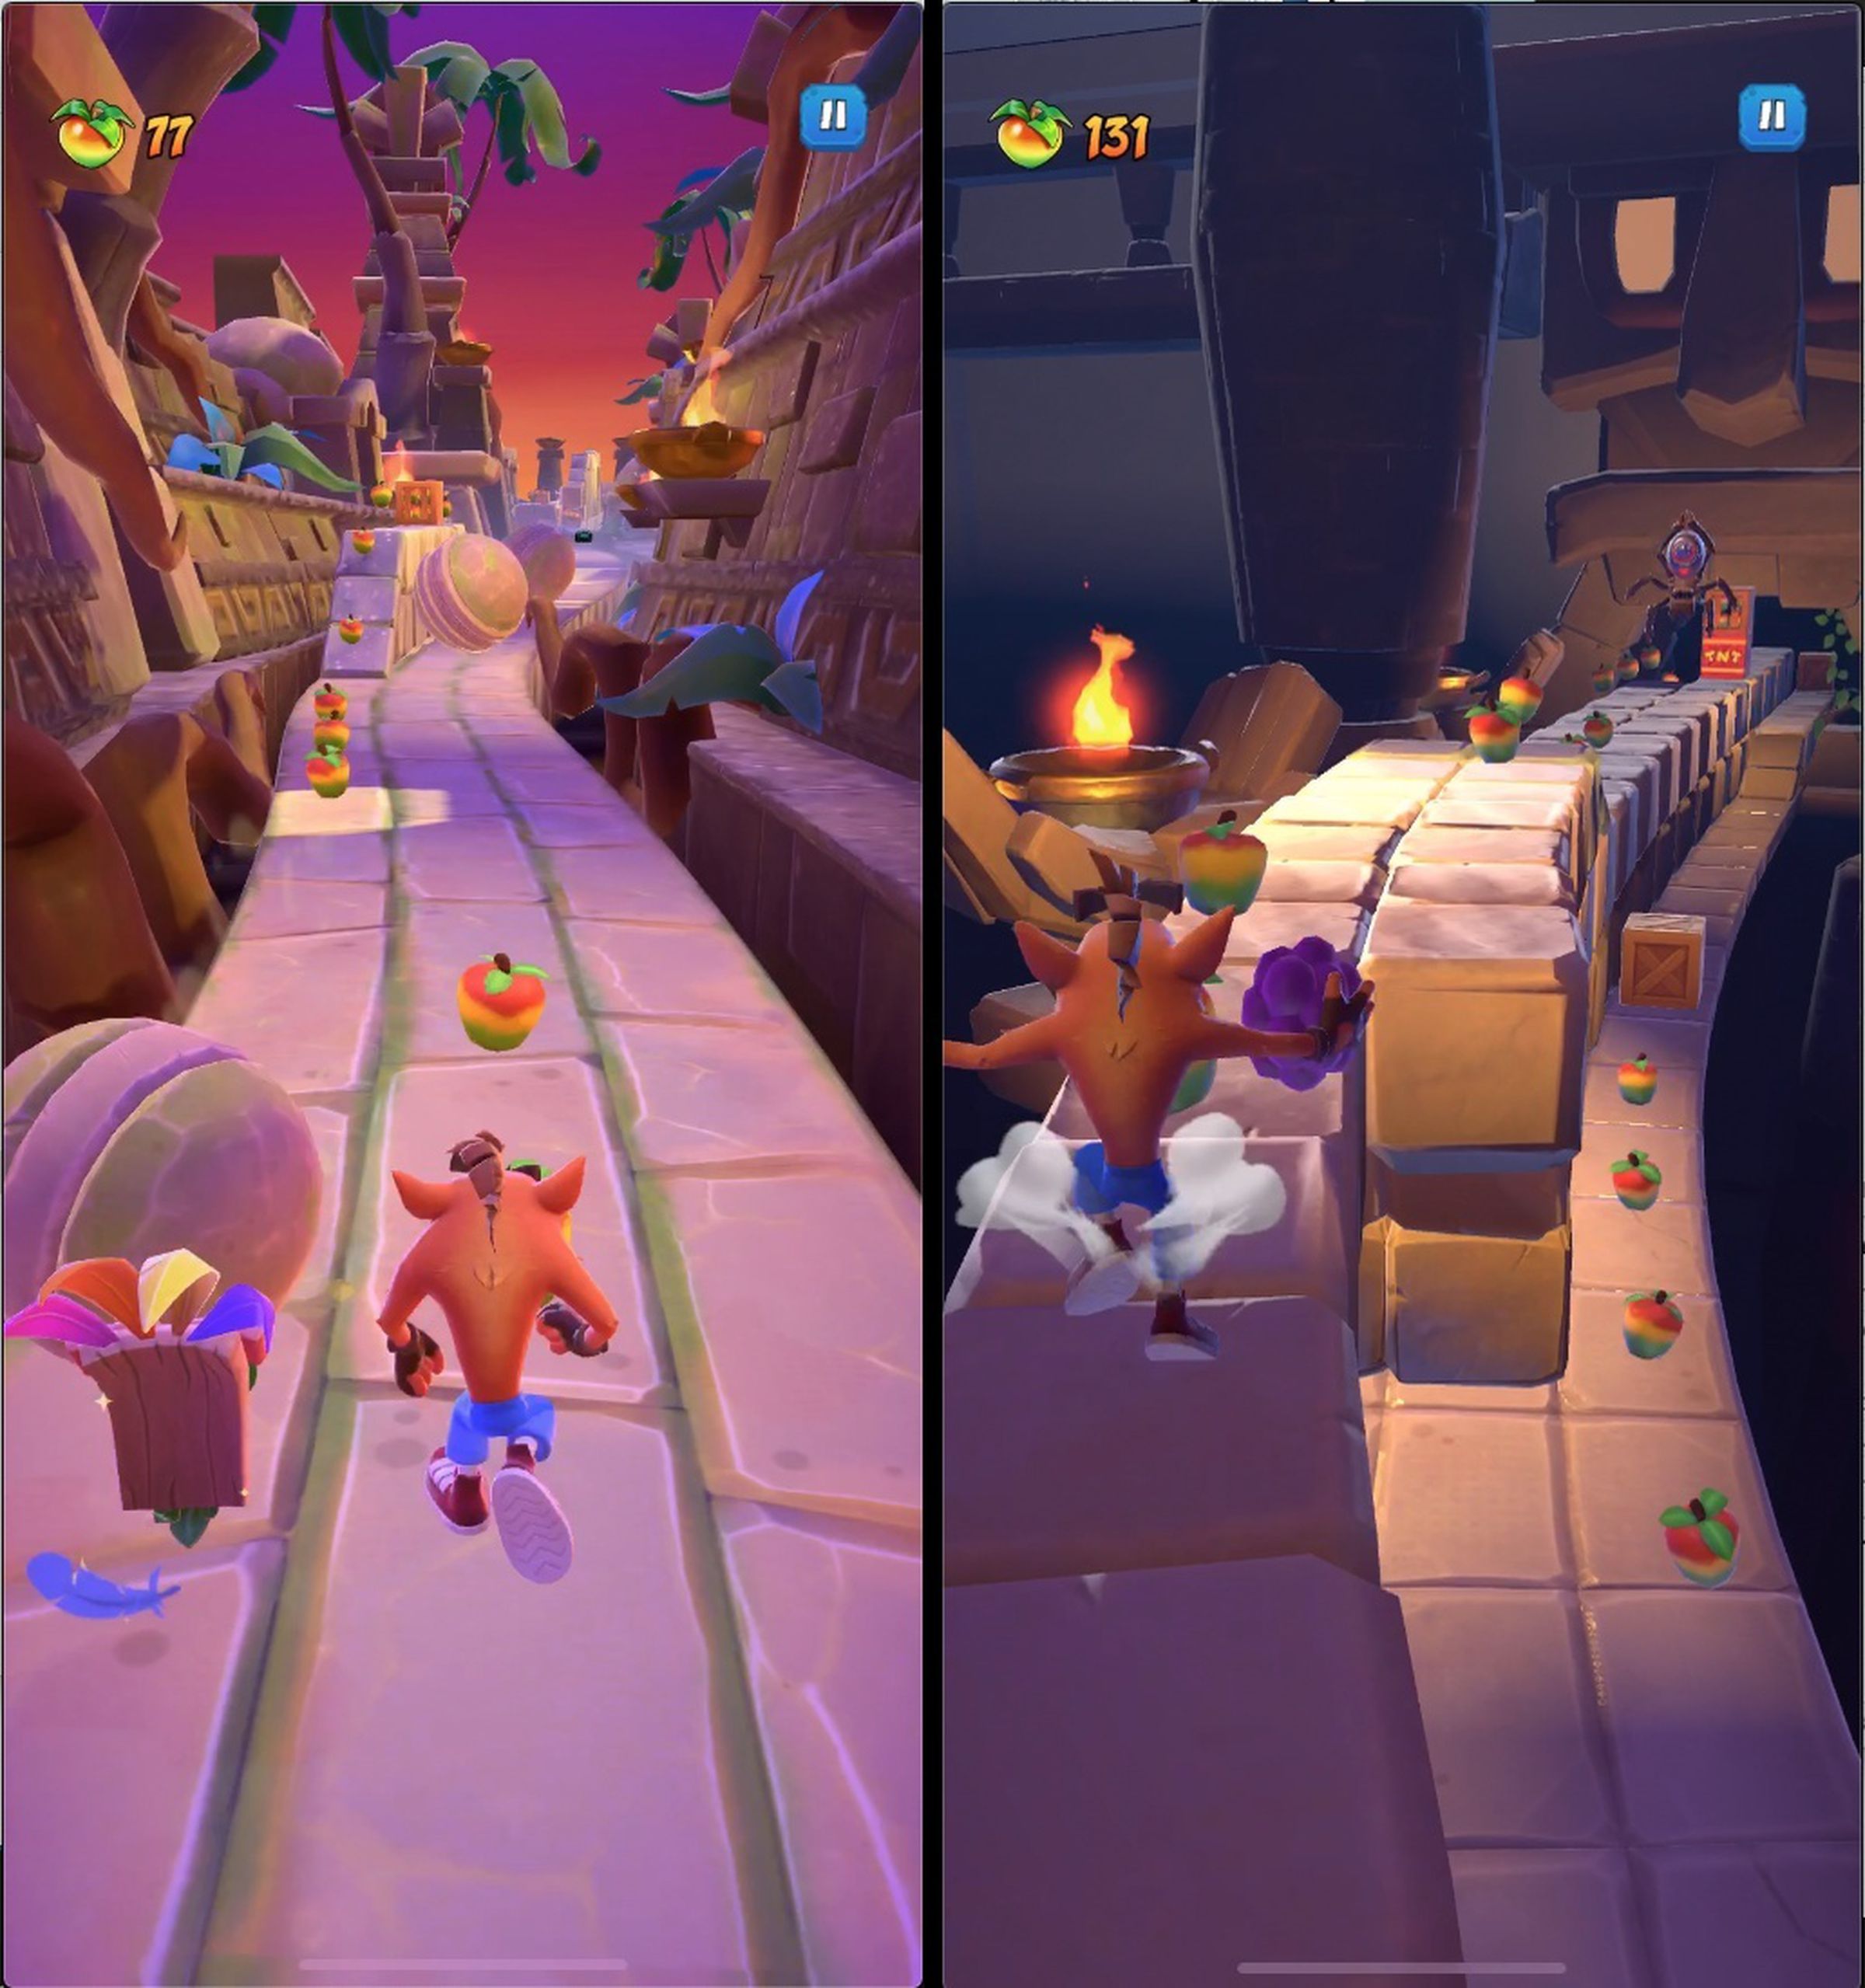 Gameplay screenshots of Crash Bandicoot: On the Run.